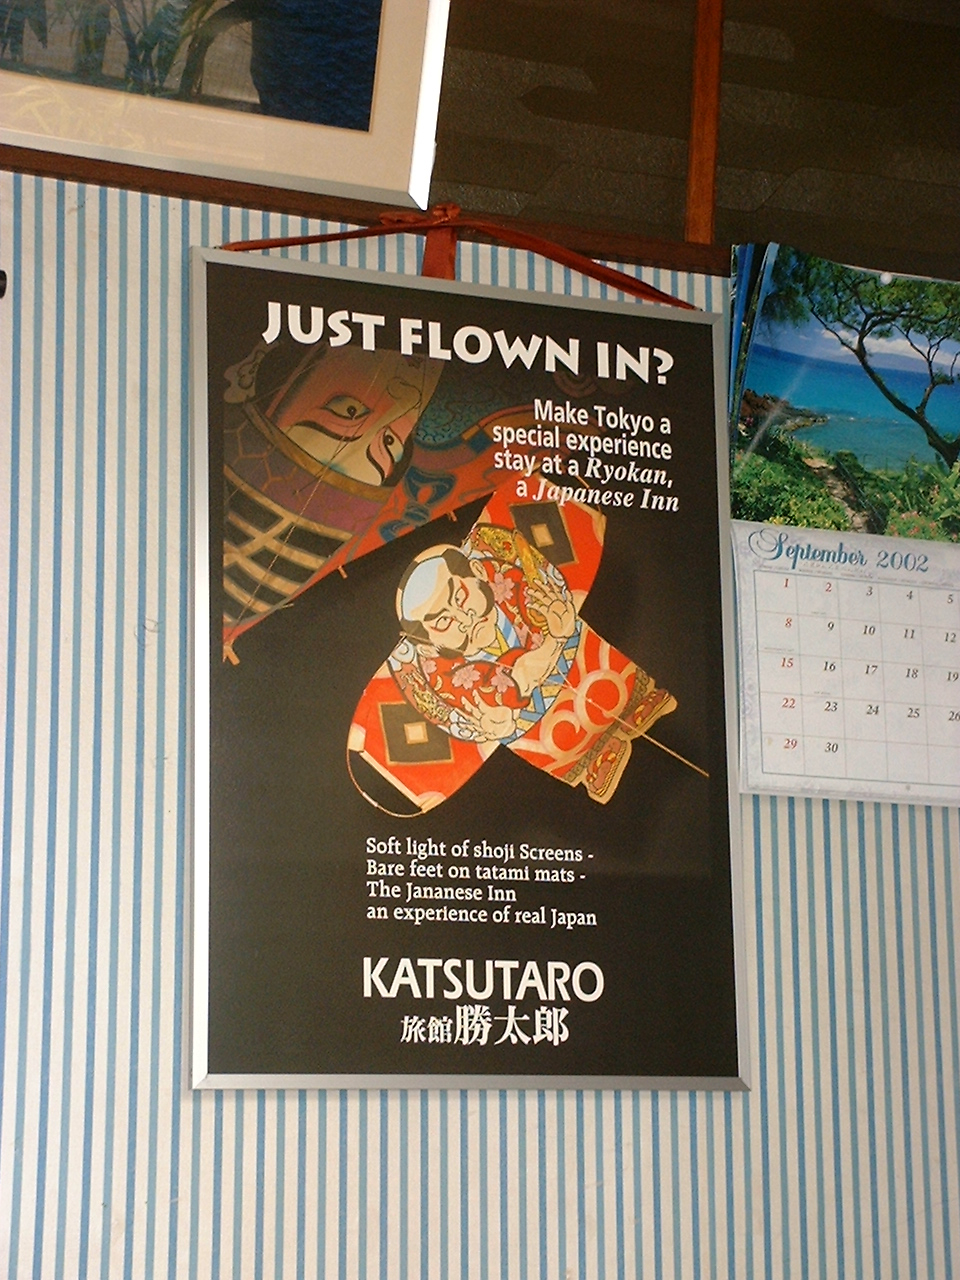 a promotional poster for ryokan katsutaro